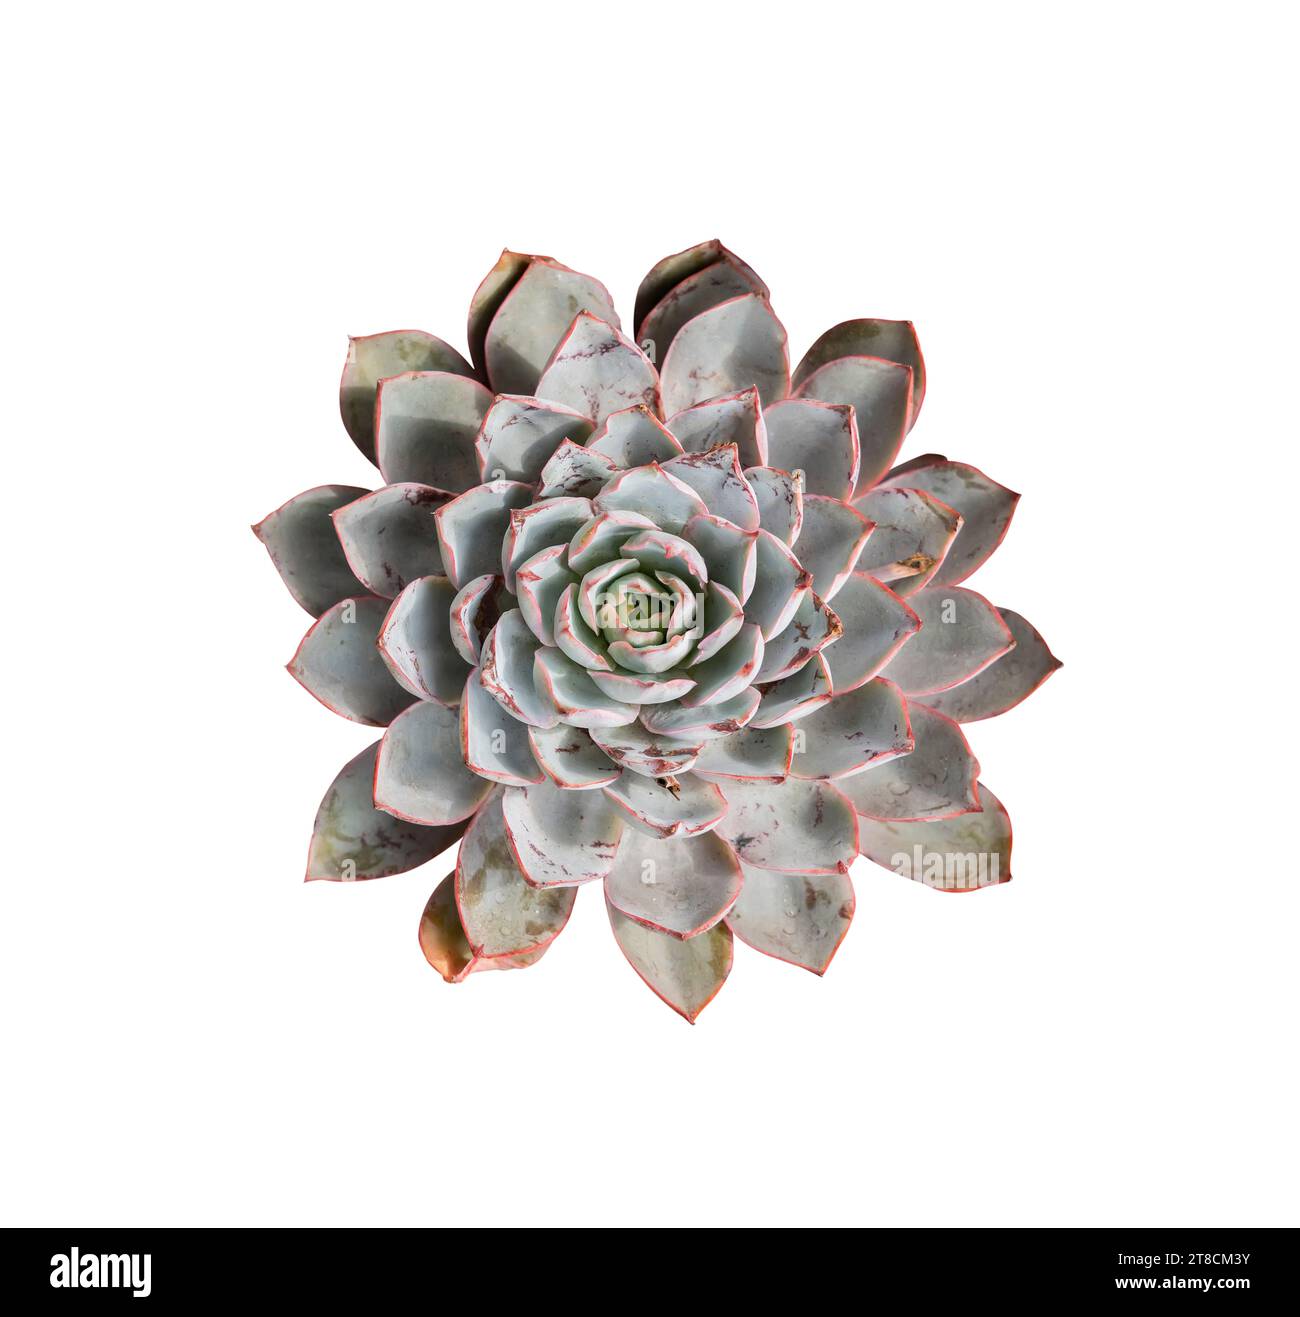 Plantes succulentes miniatures (cactus succulents) isolées sur blanc Banque D'Images